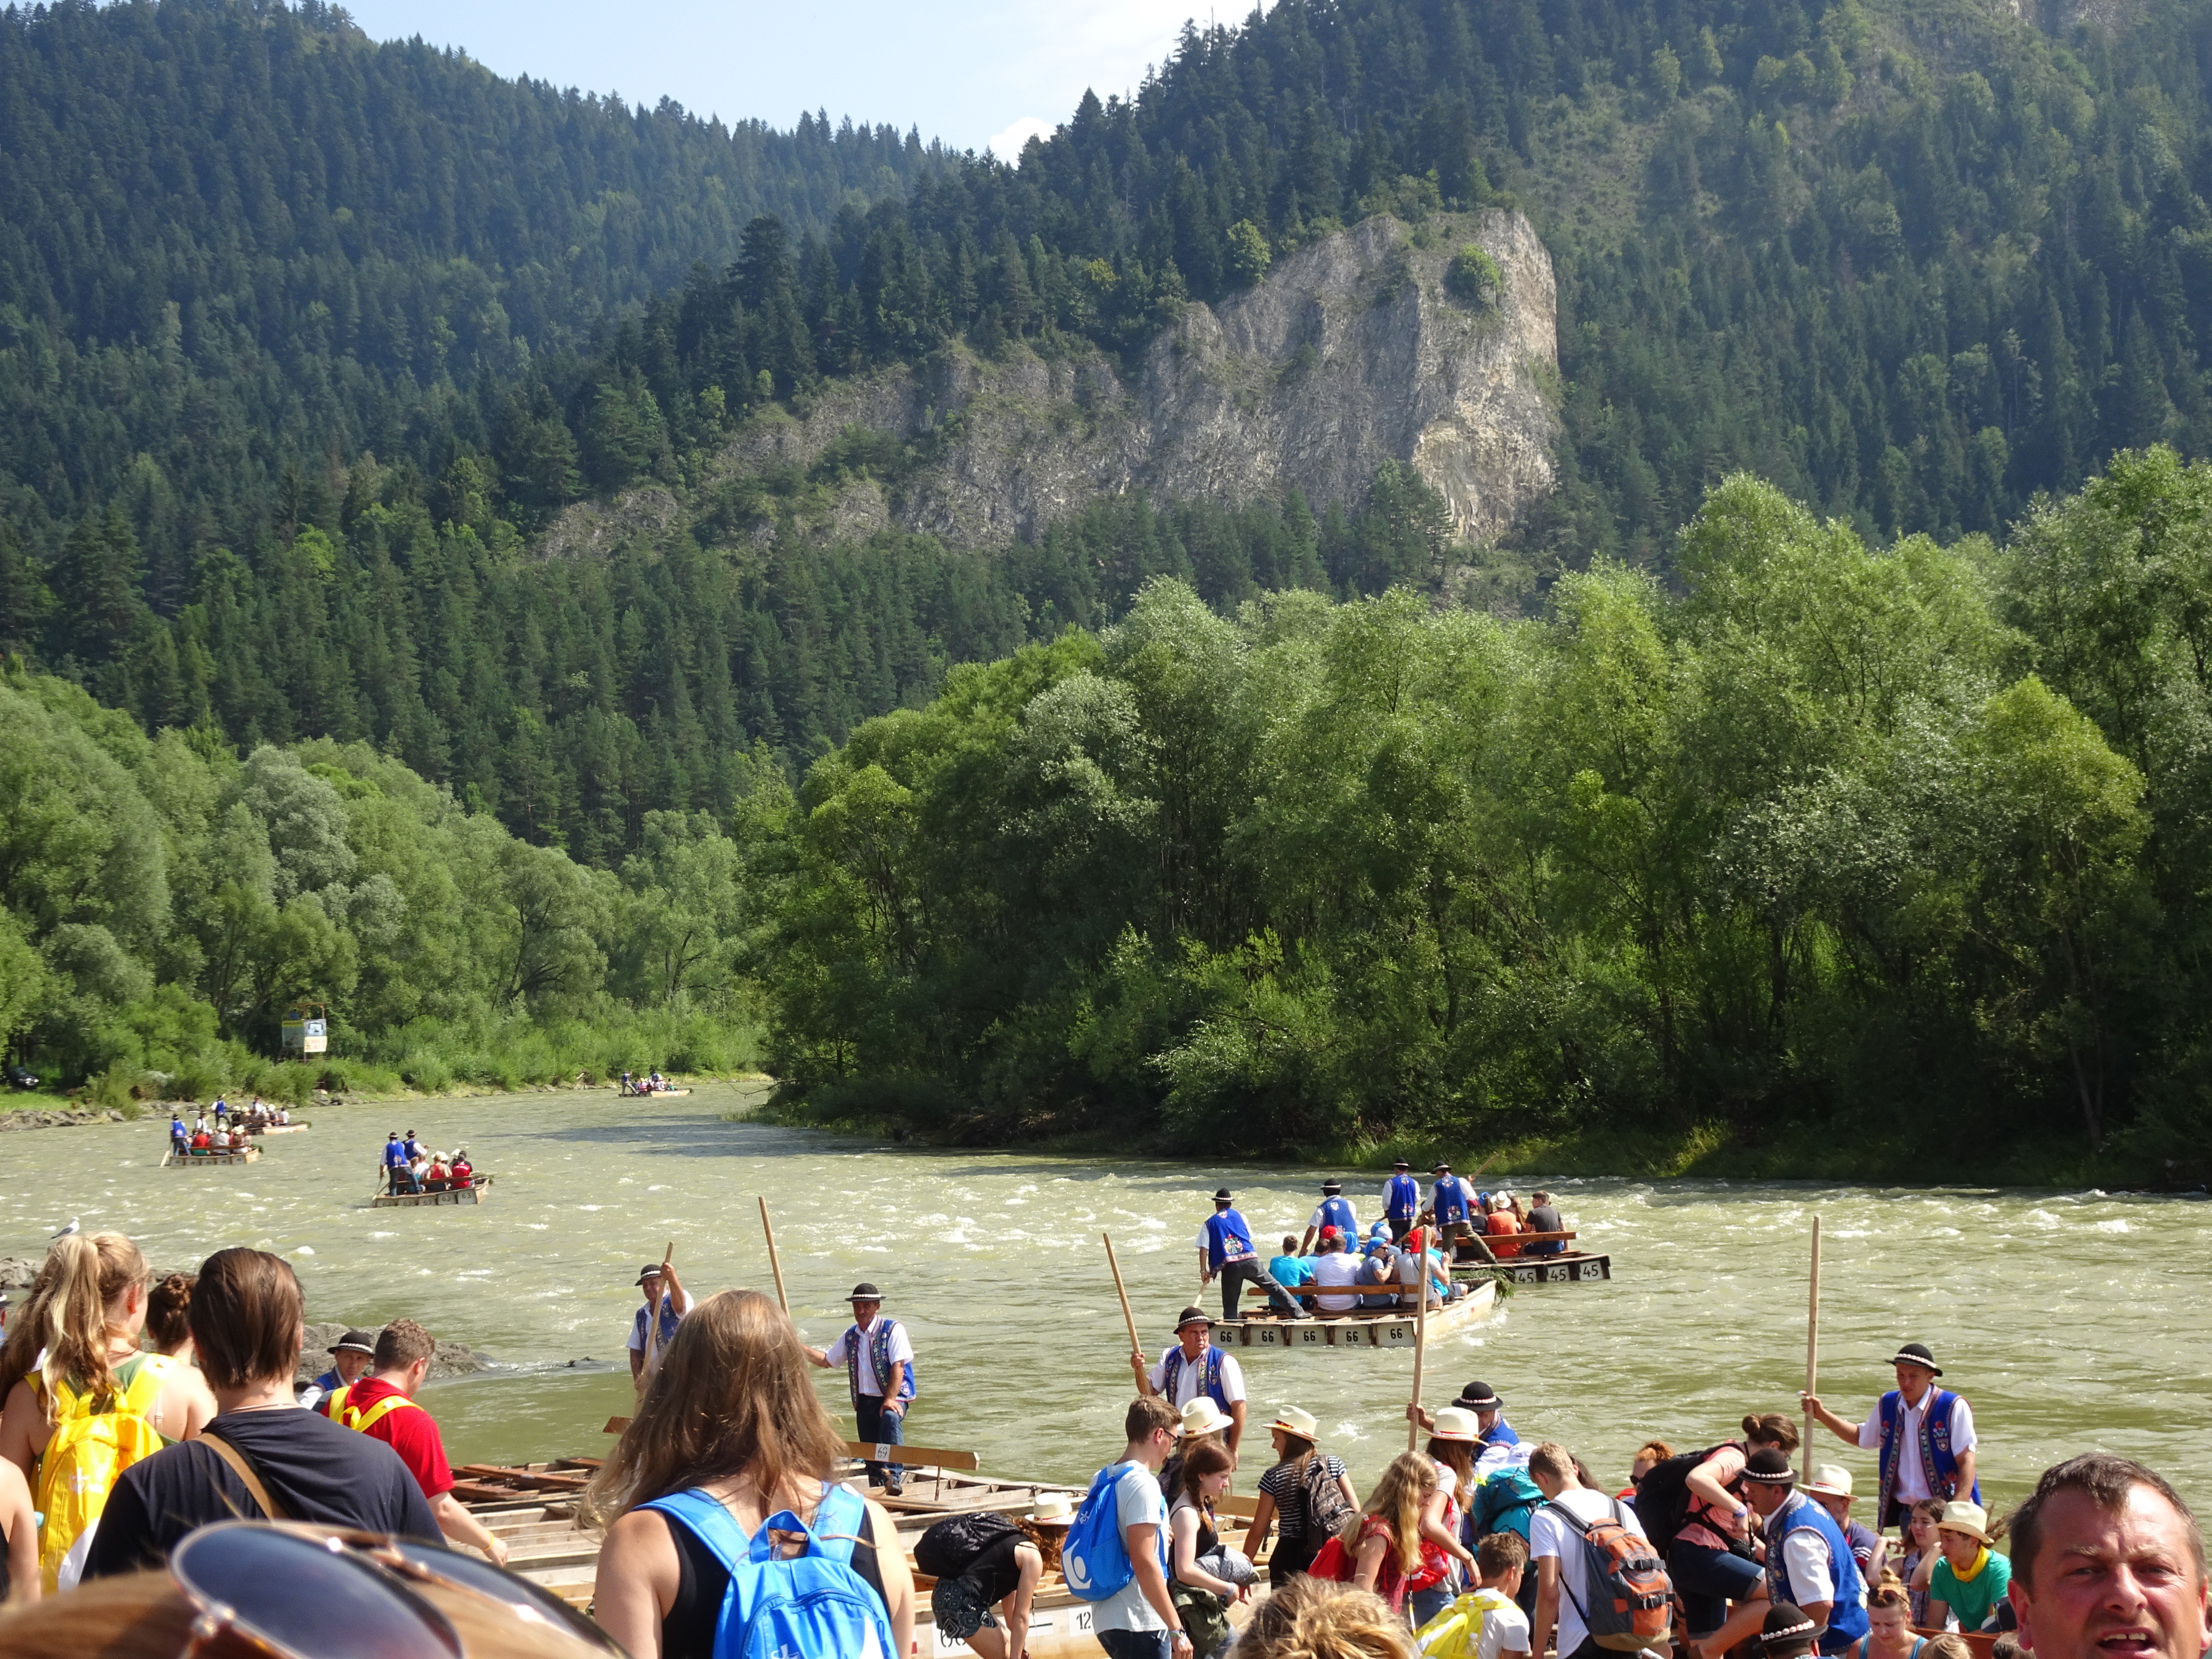 Floßtour auf der Dunajev in der Tatra. Dies ist der Grenzfluss zur Slowakei, ein belebter Gebirgsfluss, der die Tour zum Riverrafting werden lässt. Diese Aktion stand neben dem Besuch eines Salzbergwerks an unserem ersten Tag in Krakau auf dem Programm und war wunderbar erfrischend.